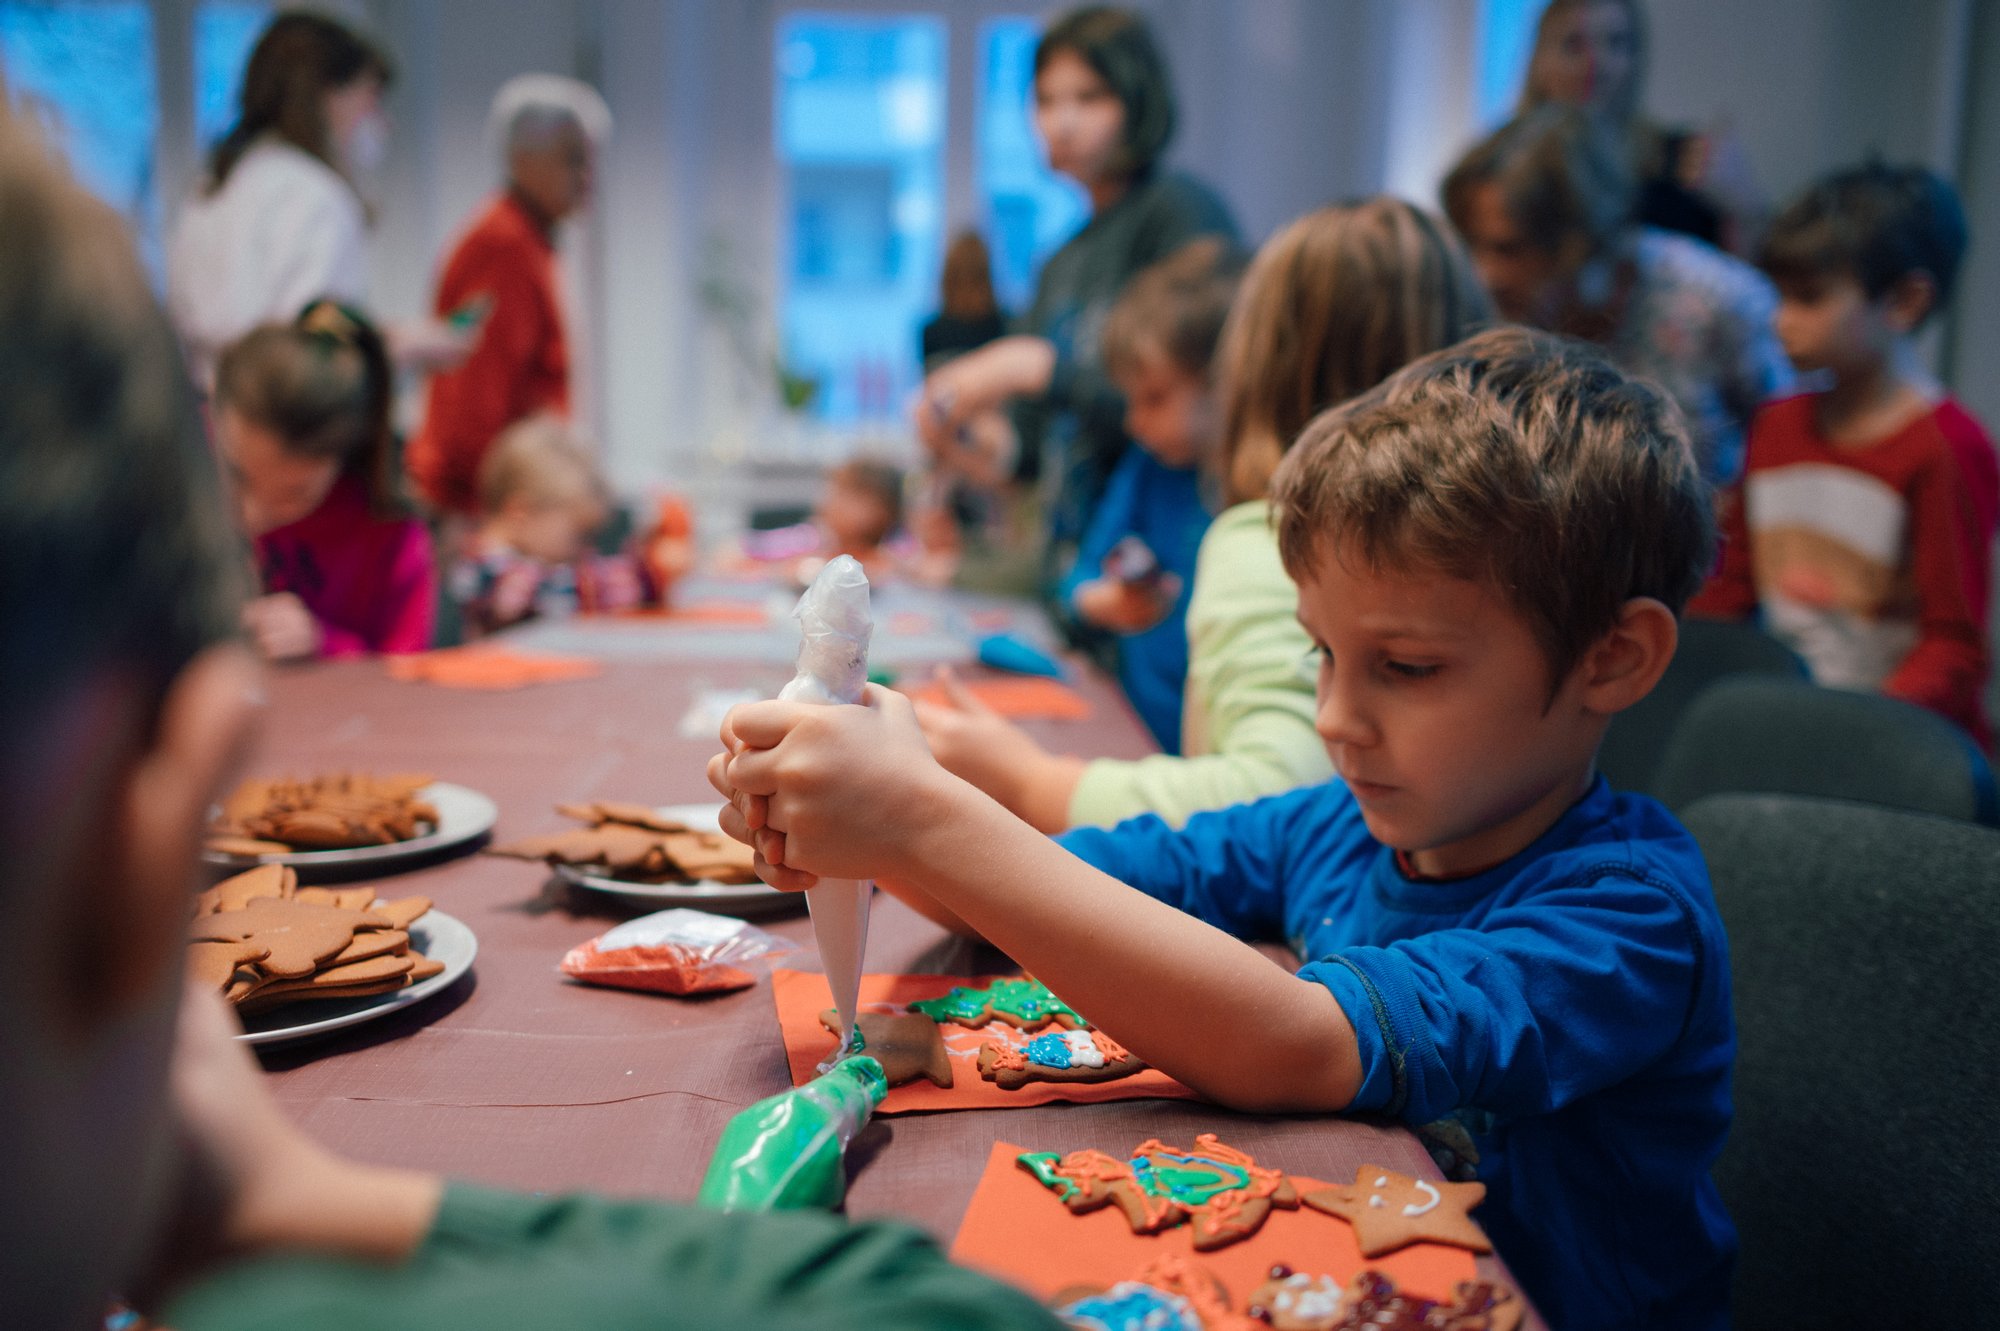 Kolorowa, pozioma fotografia. Na pierwszym planie kilkuletni chłopiec dekoruje lukrem ręcznie robione pierniczki. W tle inne dzieci ozdabiają swoje wypieki.